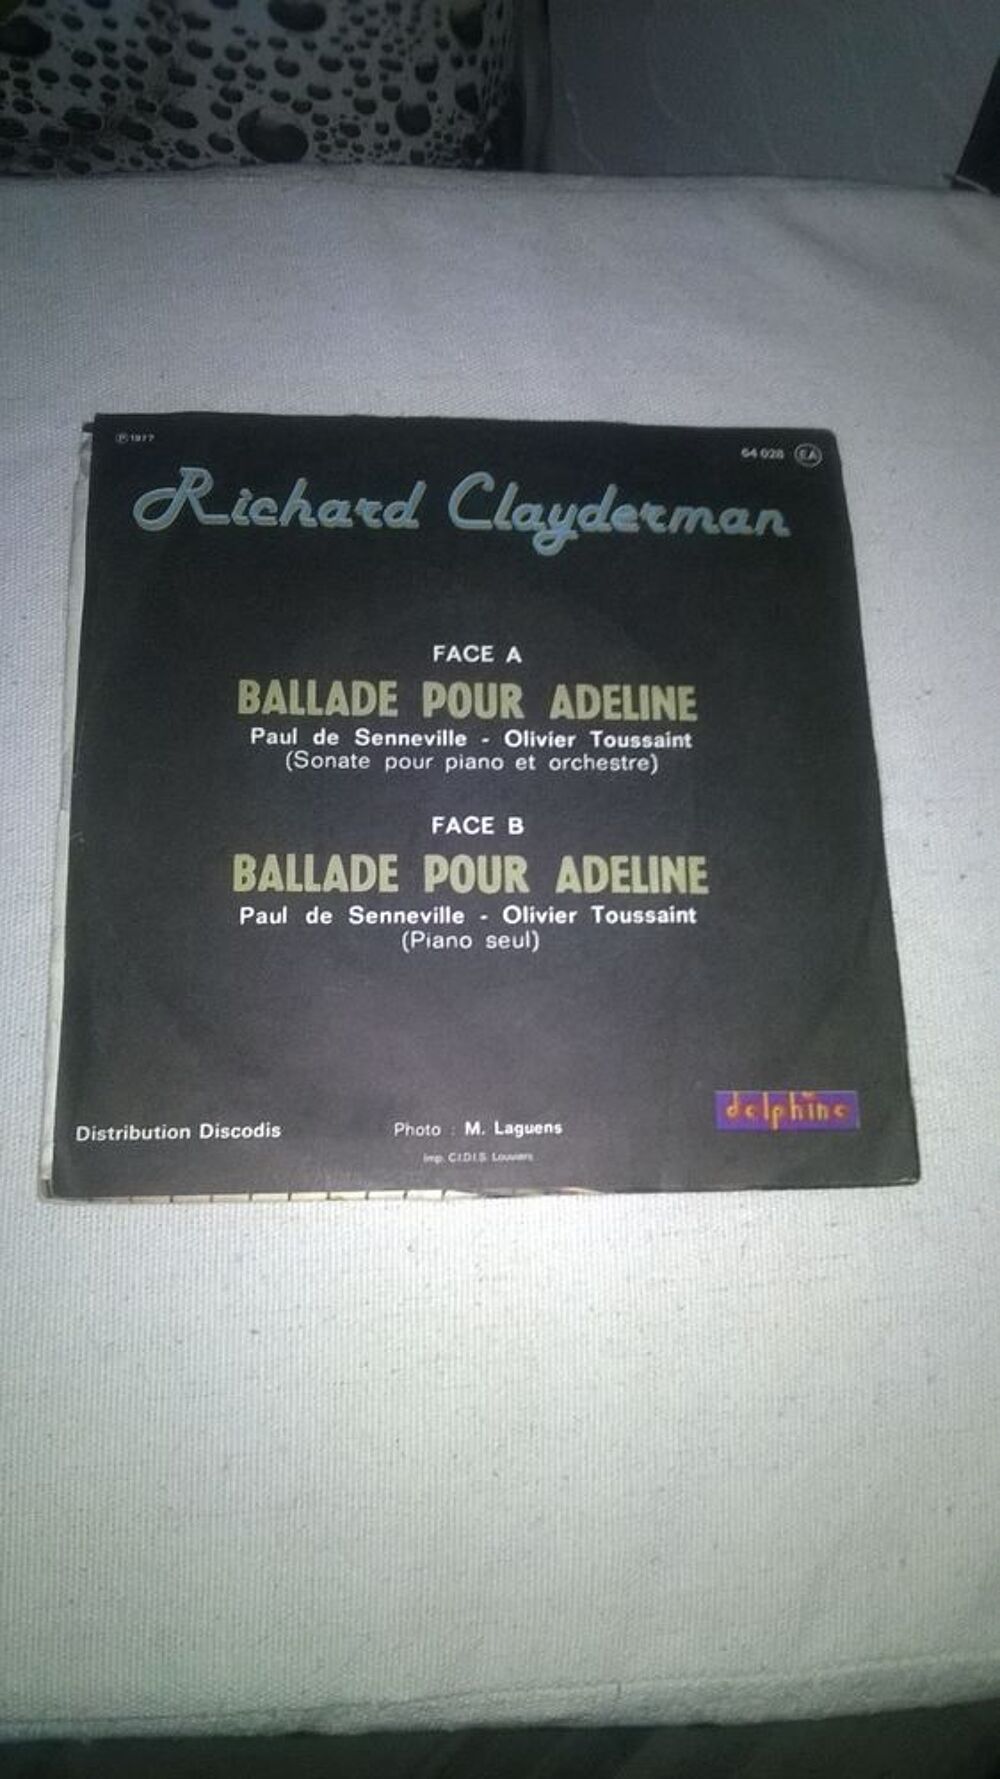 Vinyle 45 T Richard Clayderman
Ballade Pour Adeline
1977
CD et vinyles